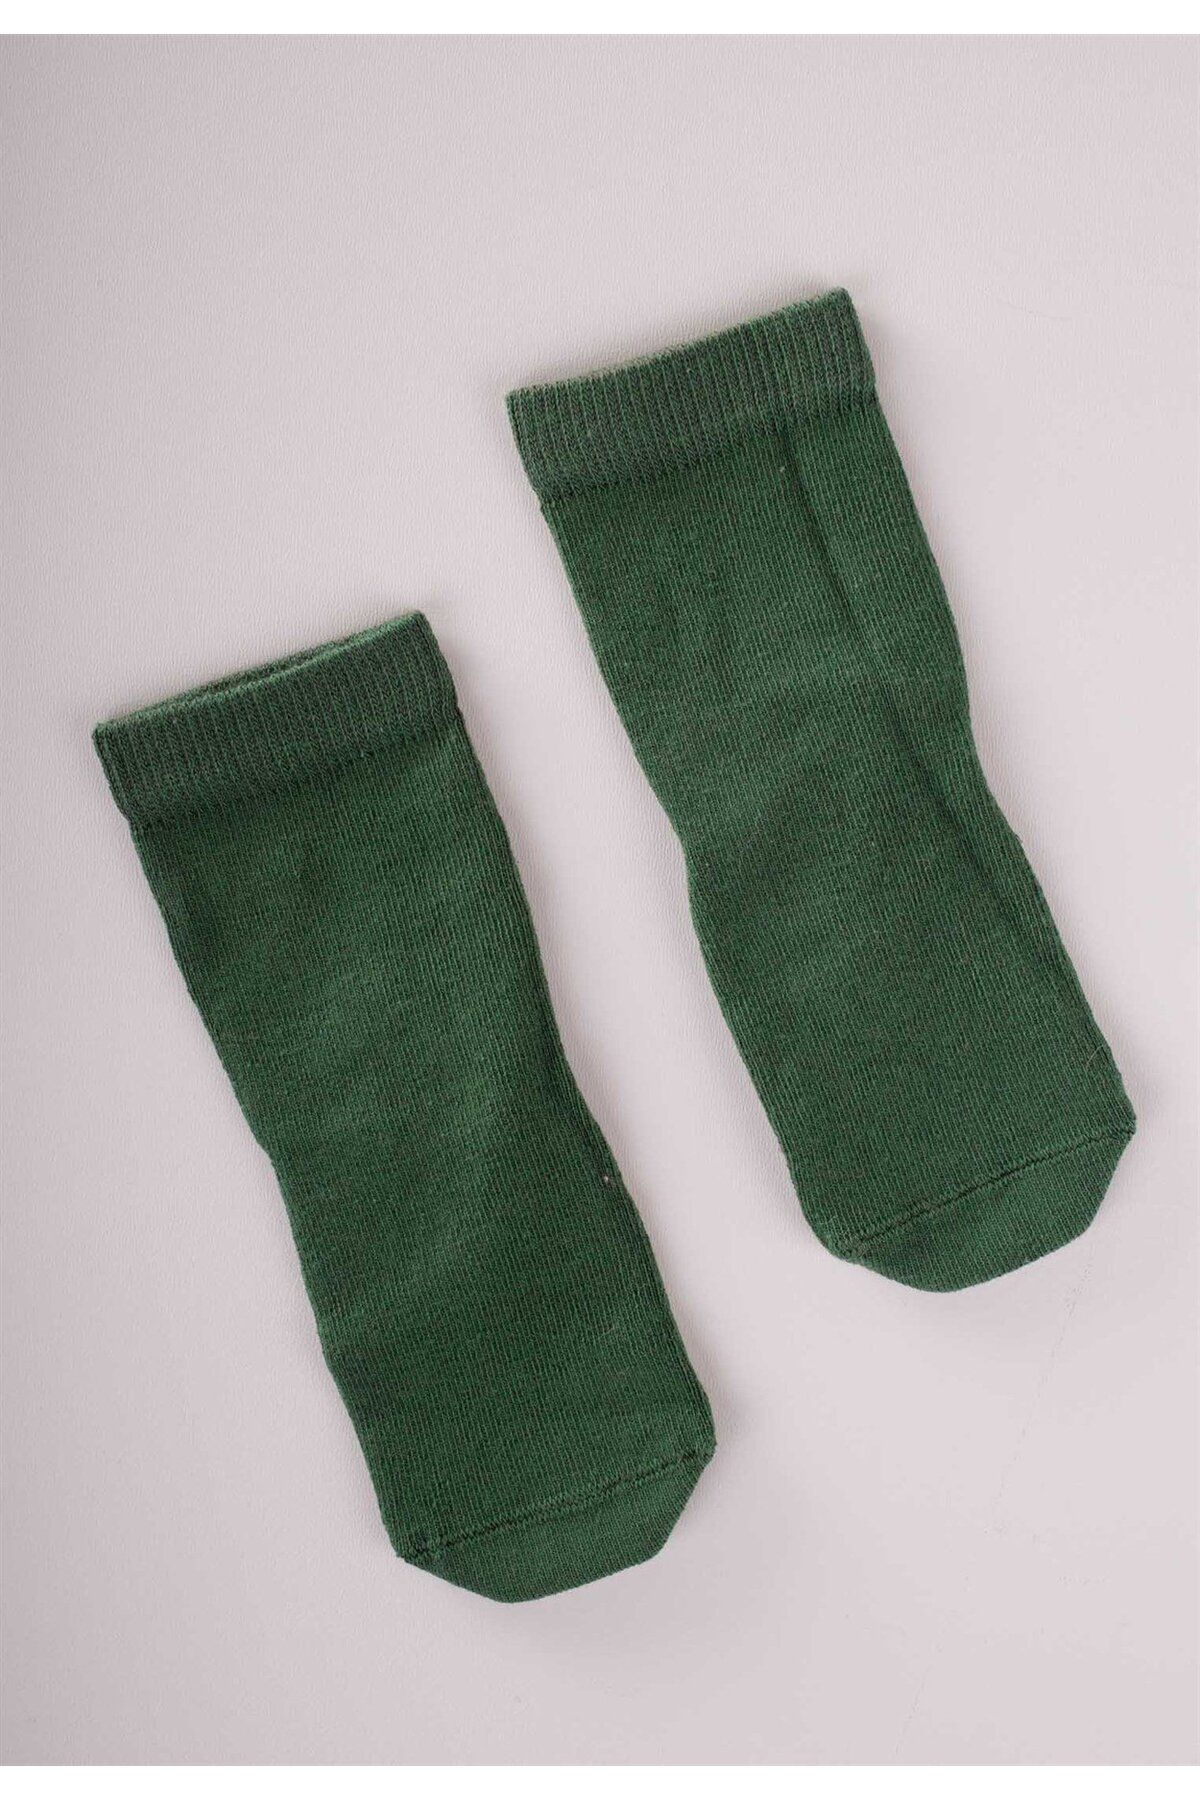 Cigit Çocuk Çorabı 2-9 Yaş Haki Yeşil